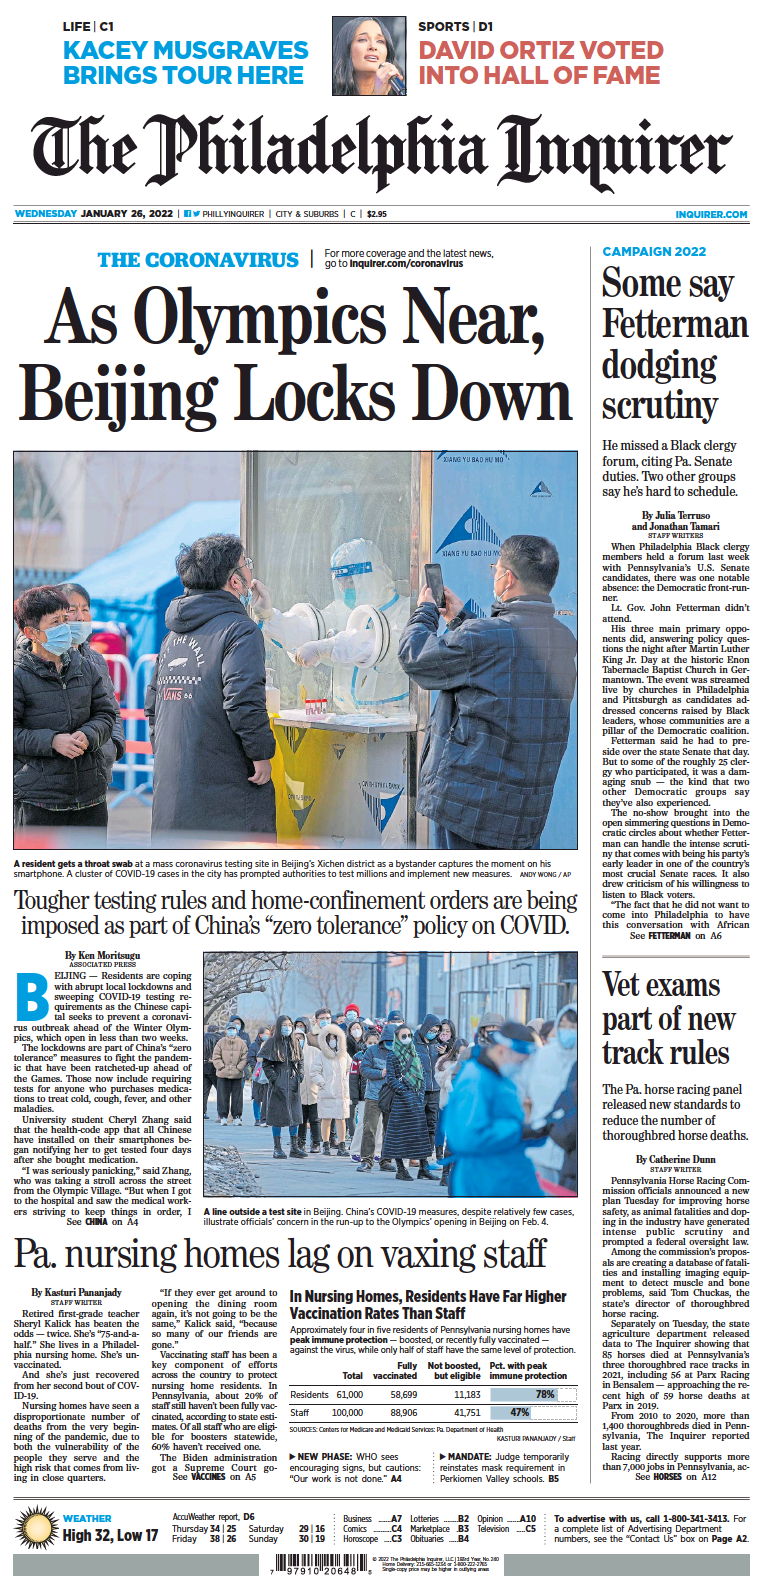 صفحه اول روزنامه فیلادلفیا/ المپیک زمستانی نزدیک می شود و پکن قرنطینه 